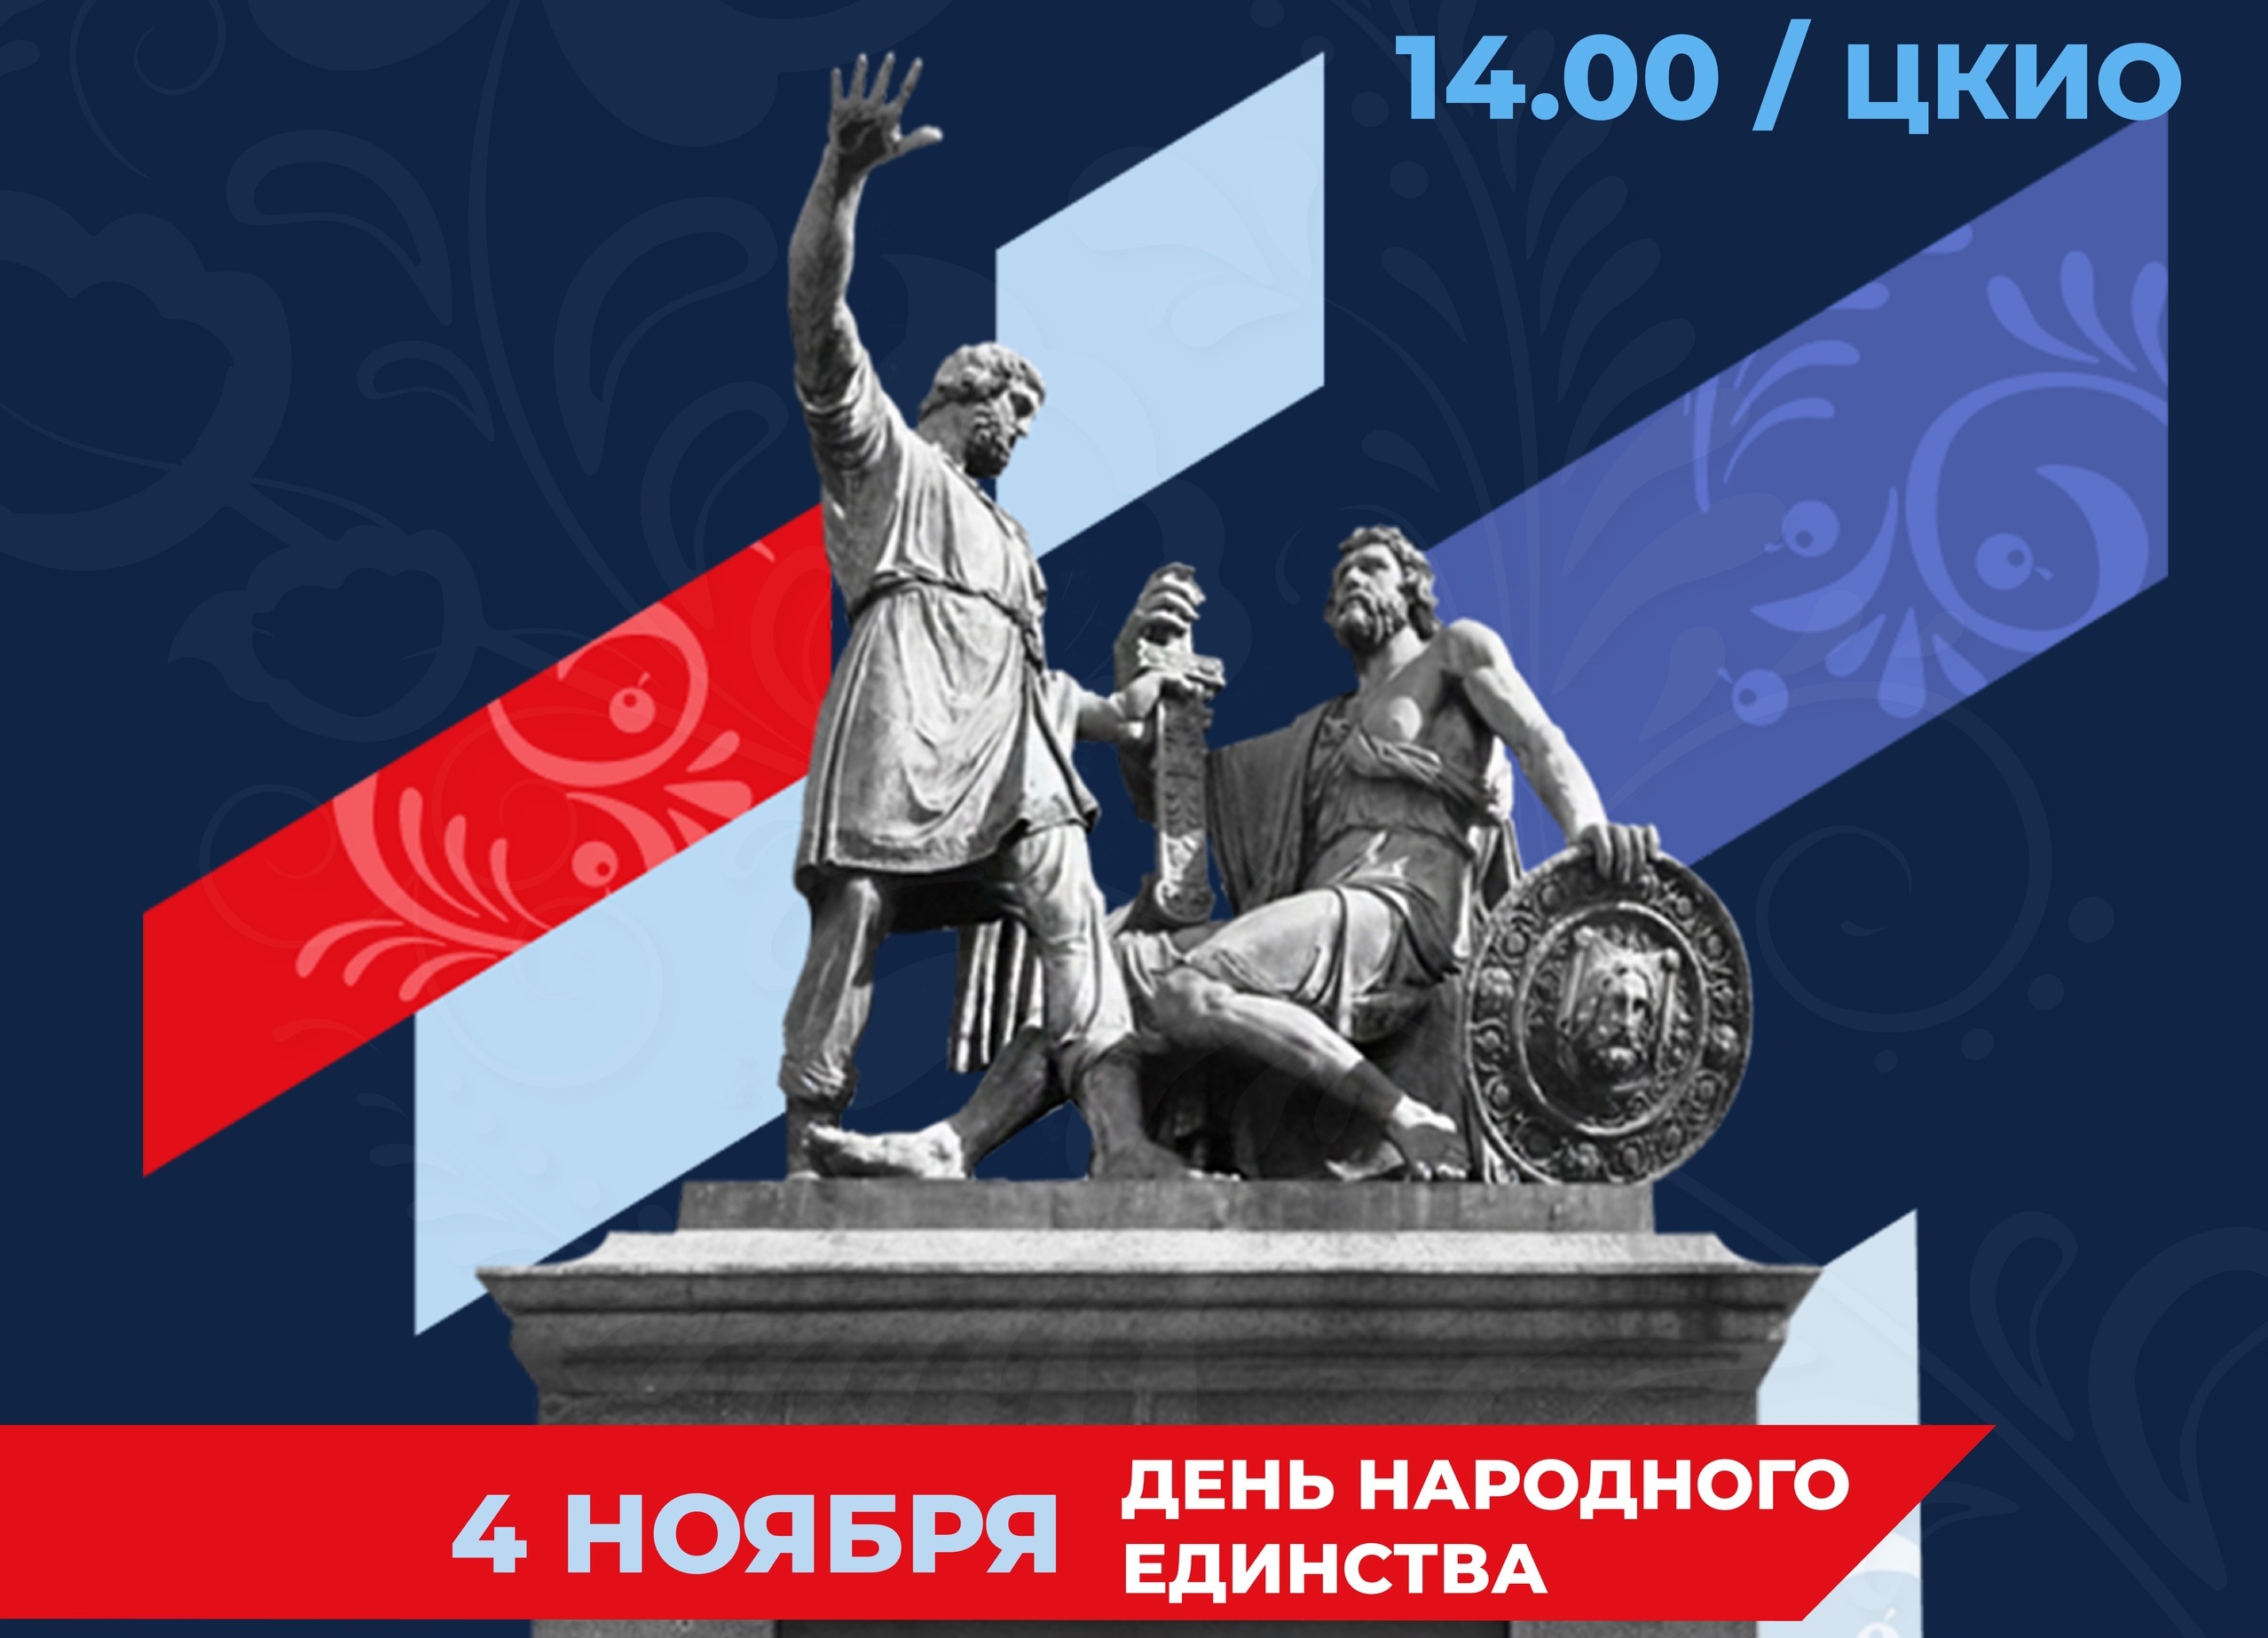 В День народного единства в ЦКИО пройдет праздничный концерт.